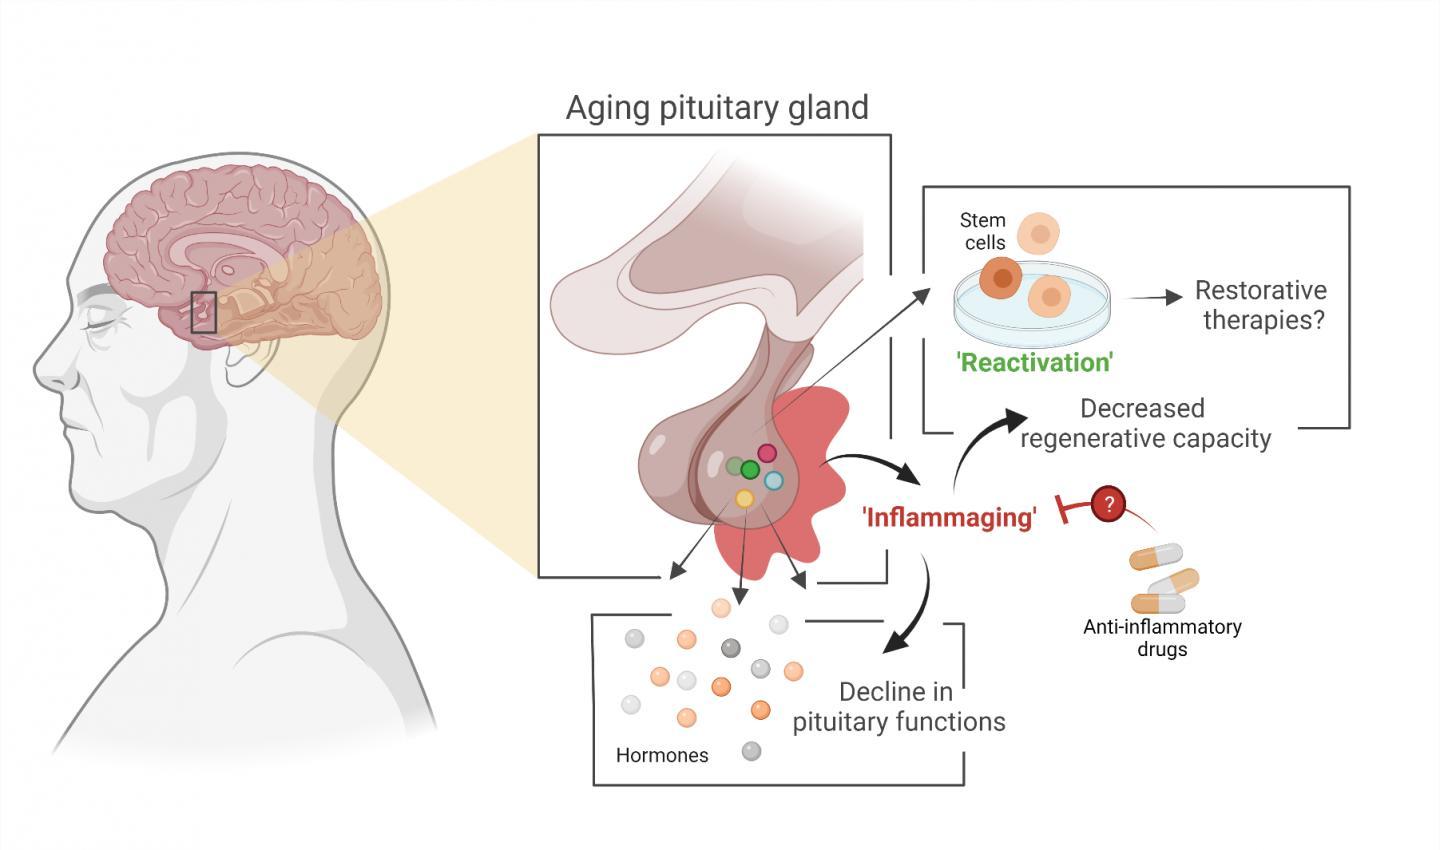 由于过程可能减慢荷尔蒙系统中的主要腺体会老化